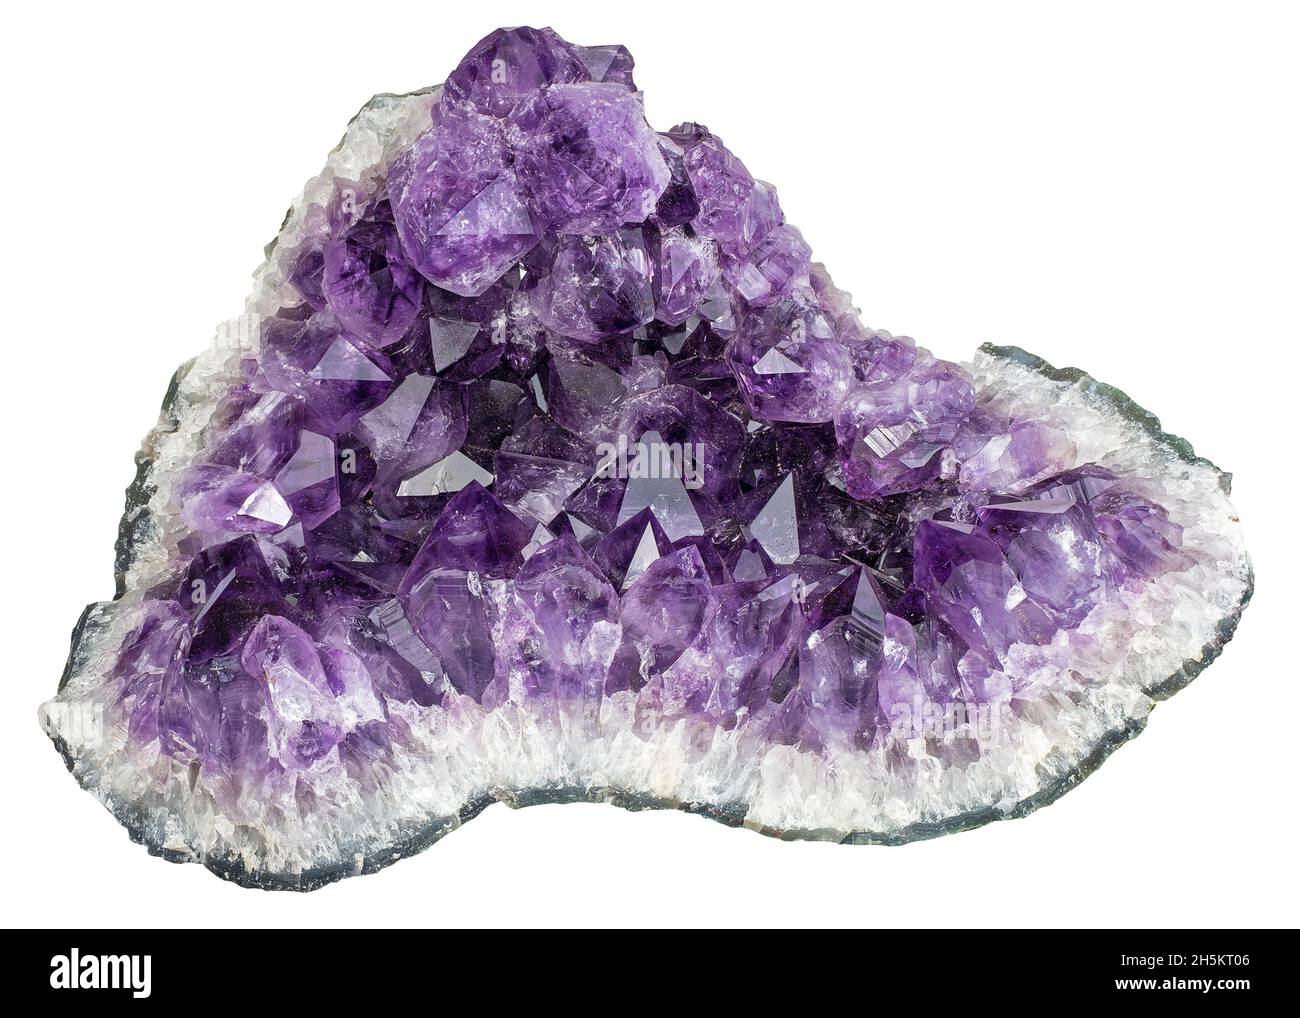 Purple amethyst crystal quartz stone isolated on white background Stock Photo